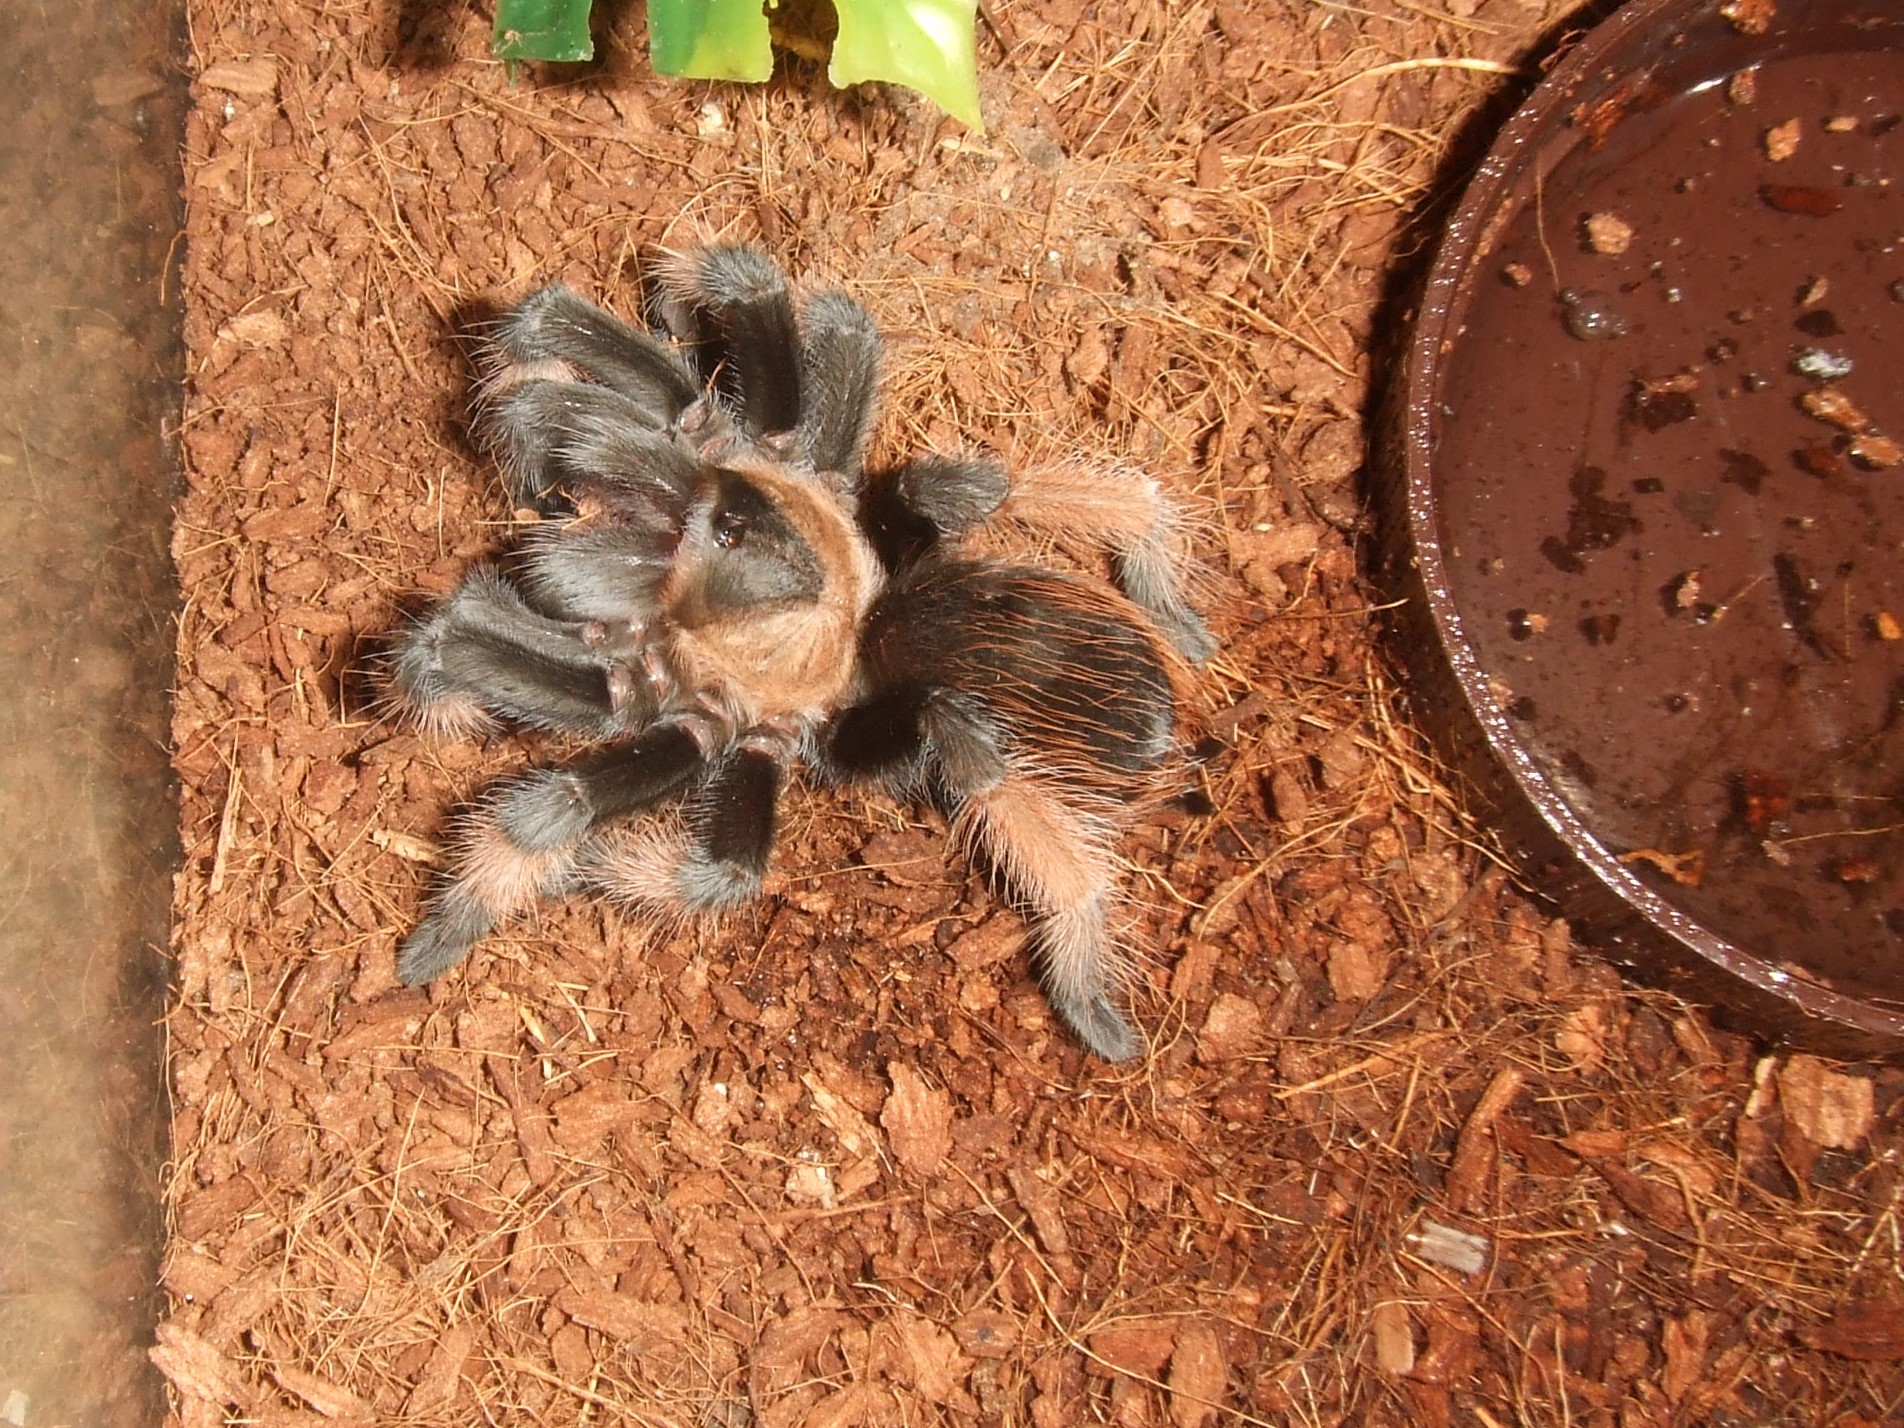 Brachypelma emilia - Chiquito